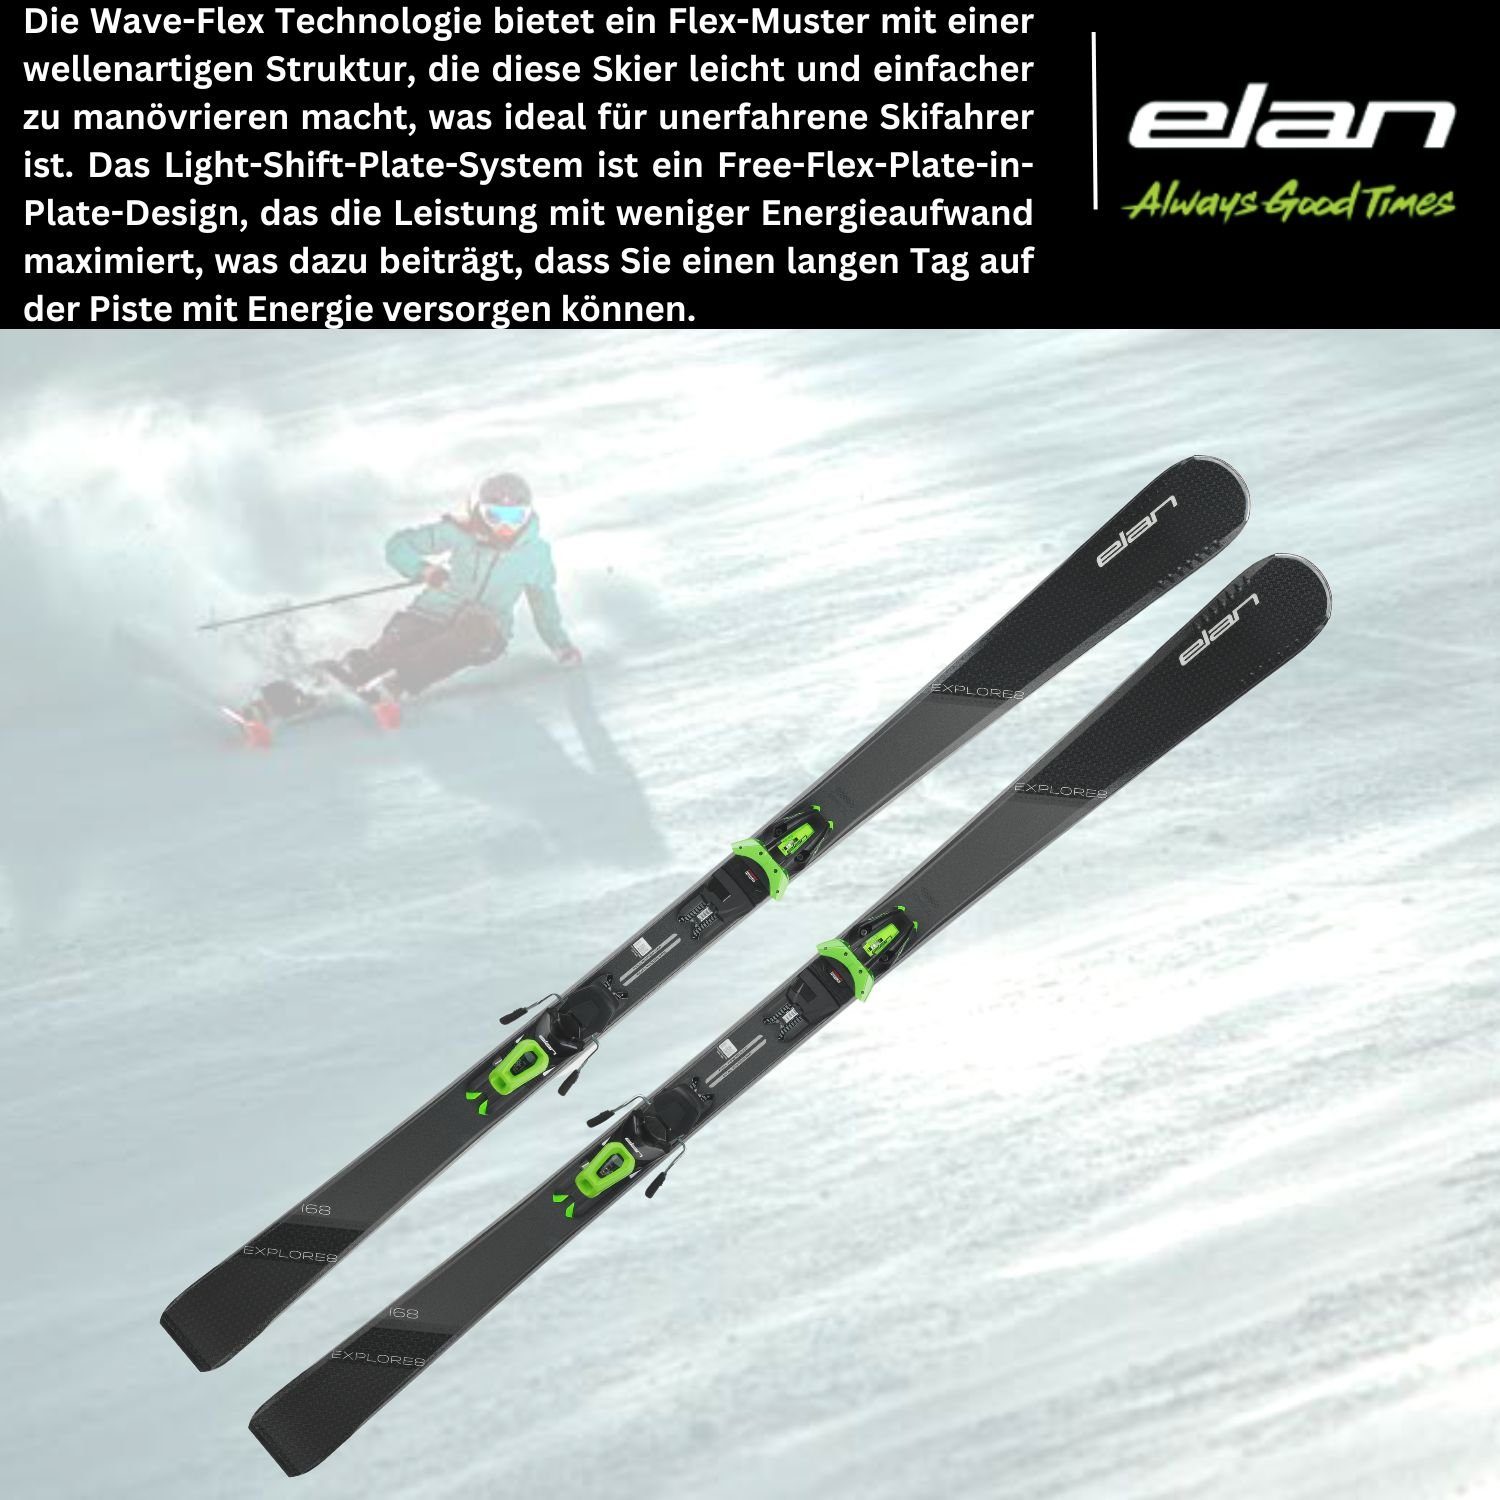 EL10.0 Walk Explore elan Allmountain 8 Grip LS Bindung Elan Ski, + Rocker Ski